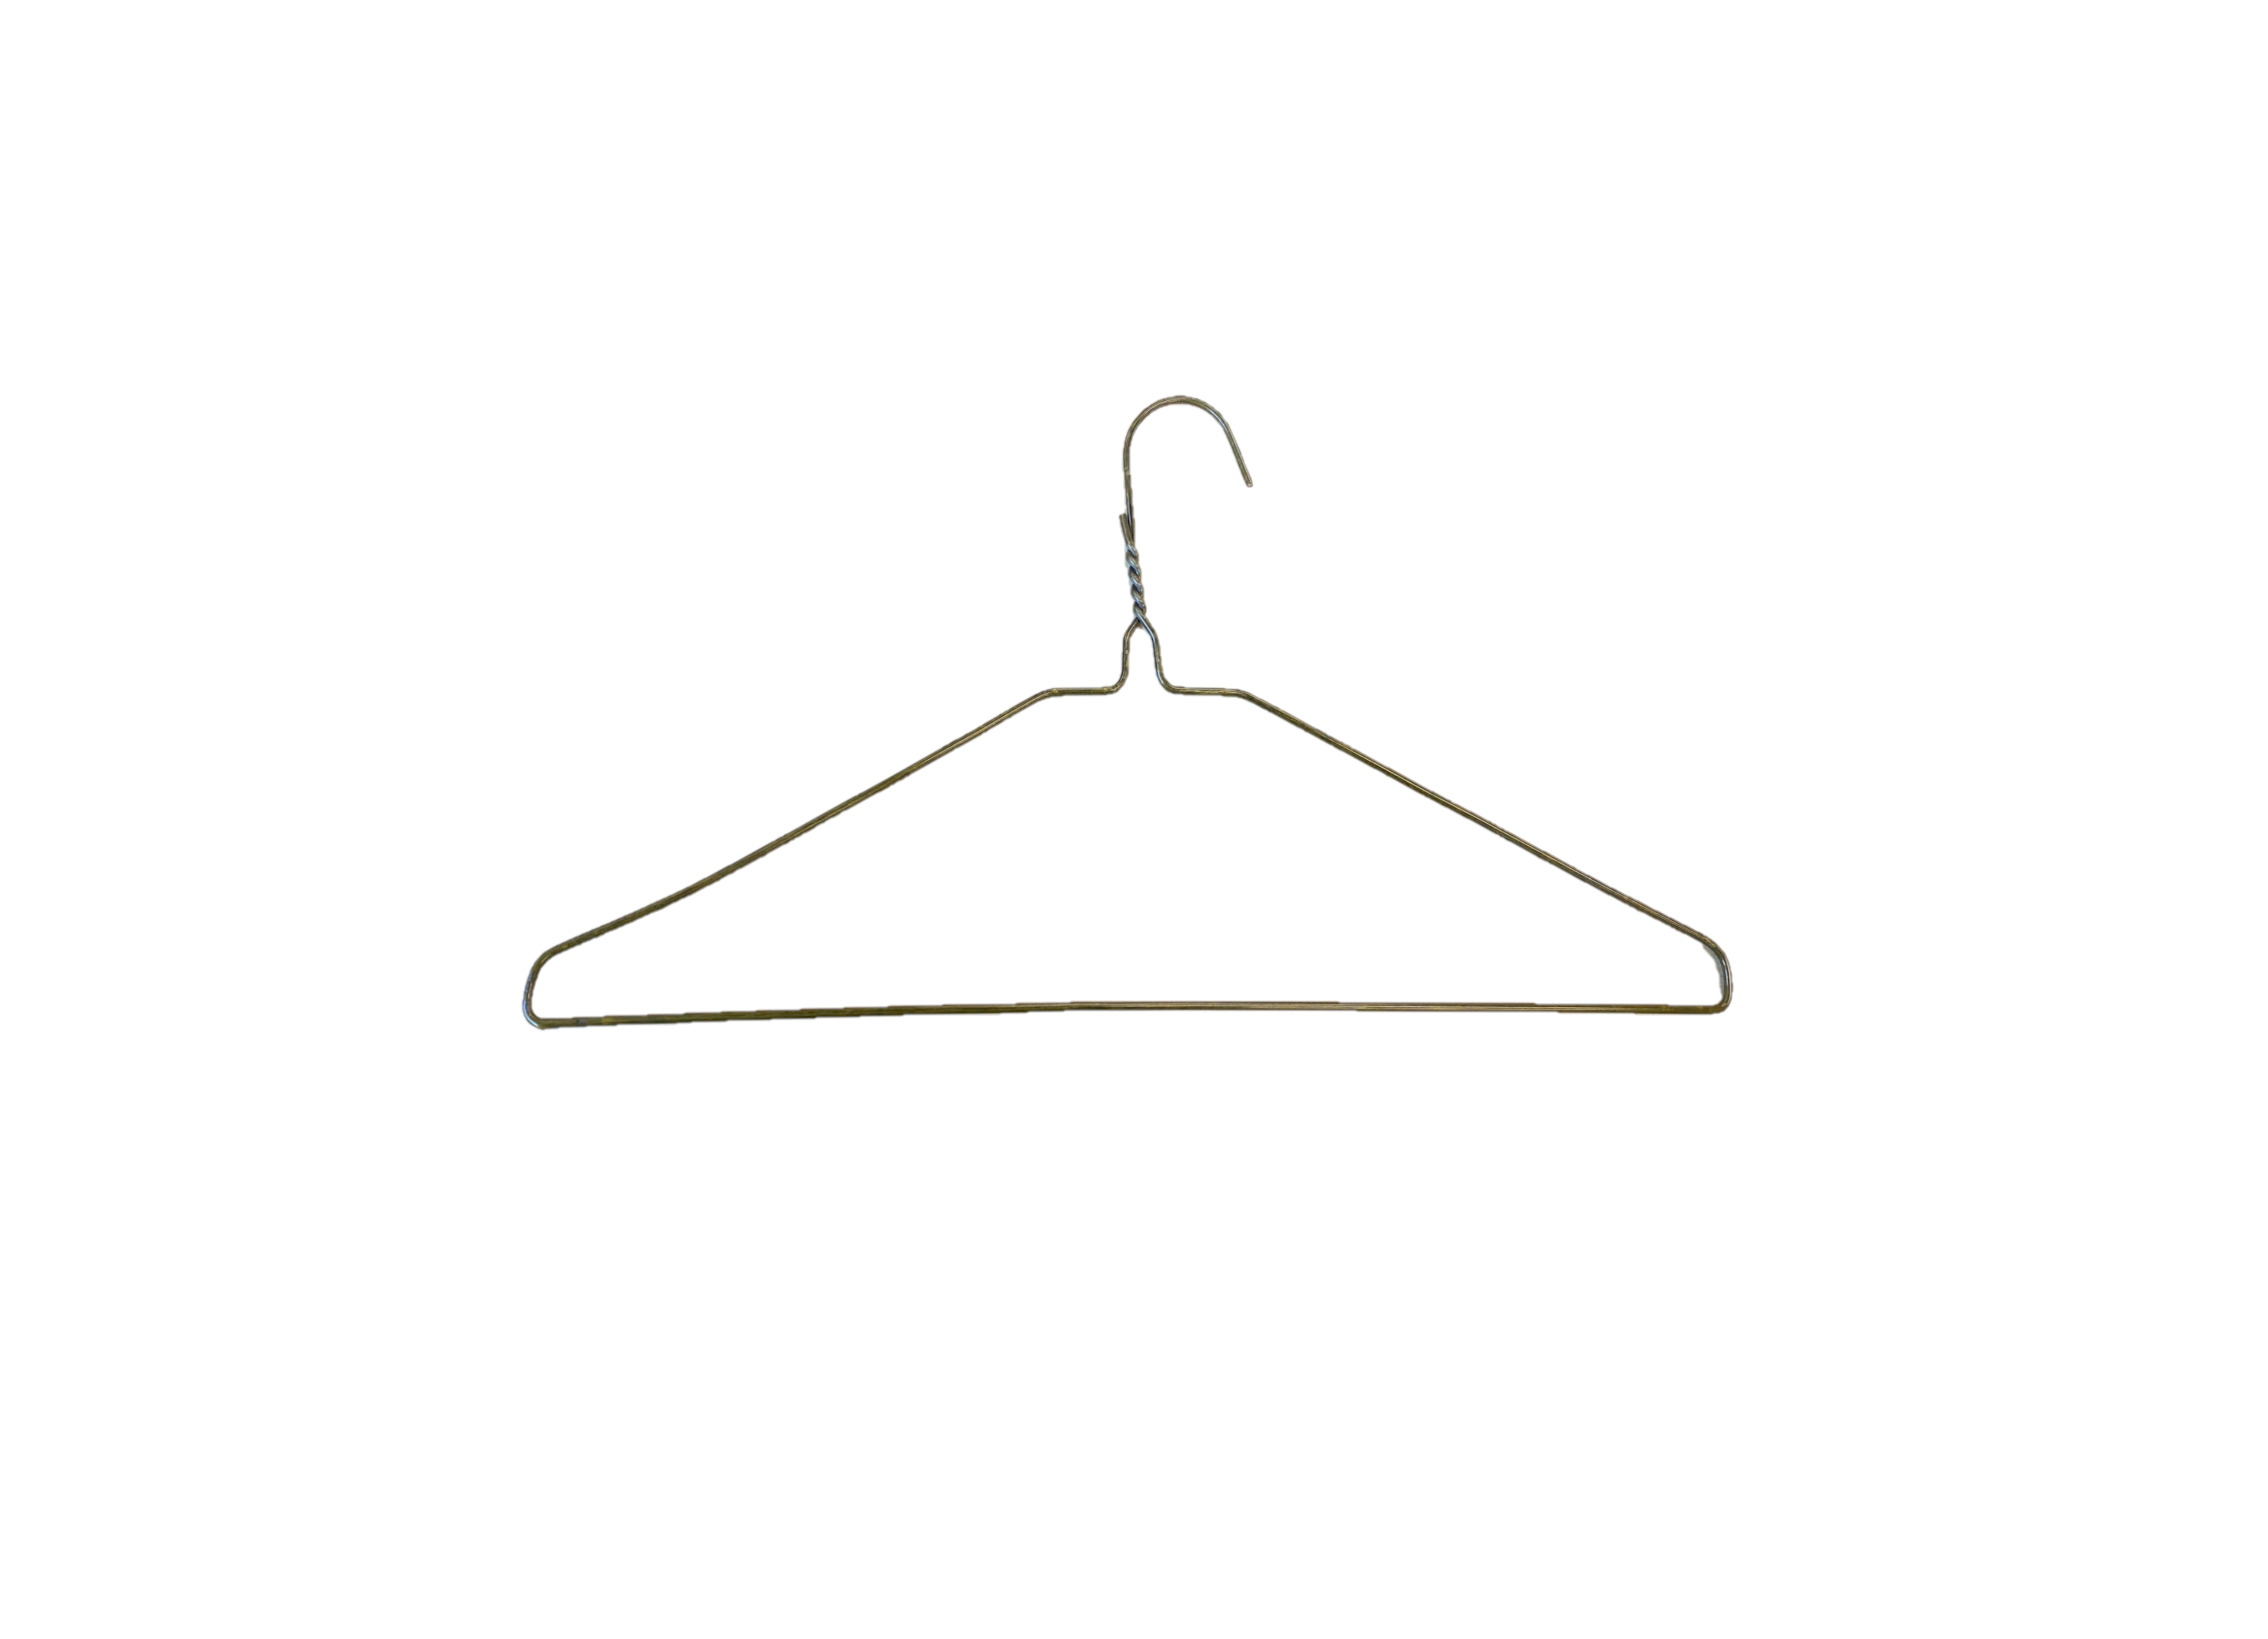  BriaUSA 50 Coat Hangers, Jacket Hangers Heavy Duty 11.5 Gauge  Metal Gold Wire Hangers 18 Inch Clothes Hangers : Home & Kitchen